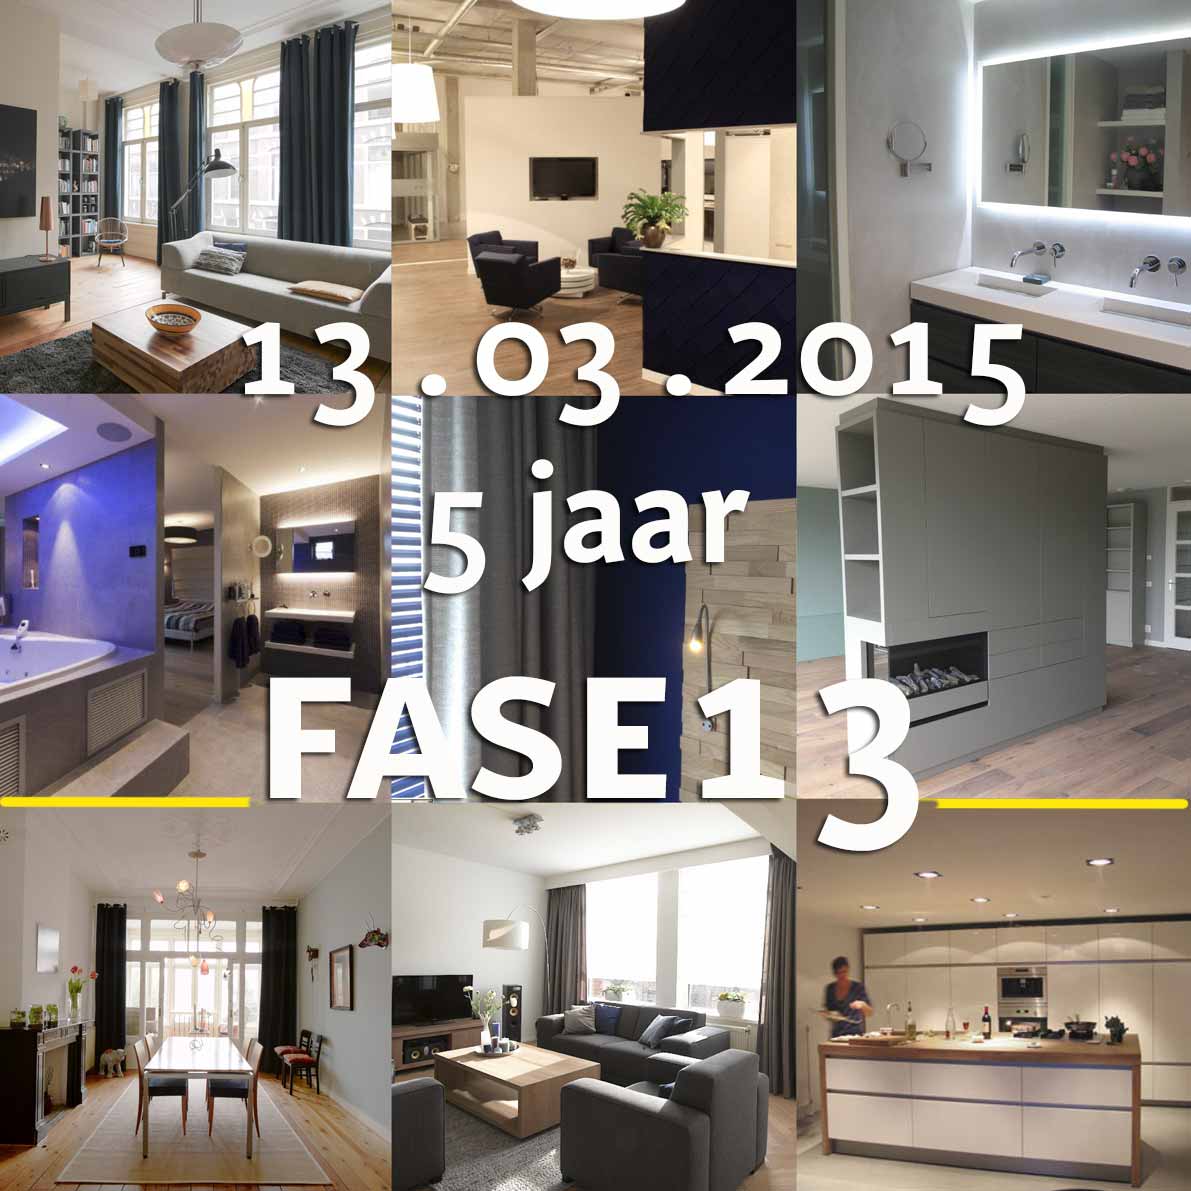 • 5 jaar FASE13 op vrijdag 13 maart 2015